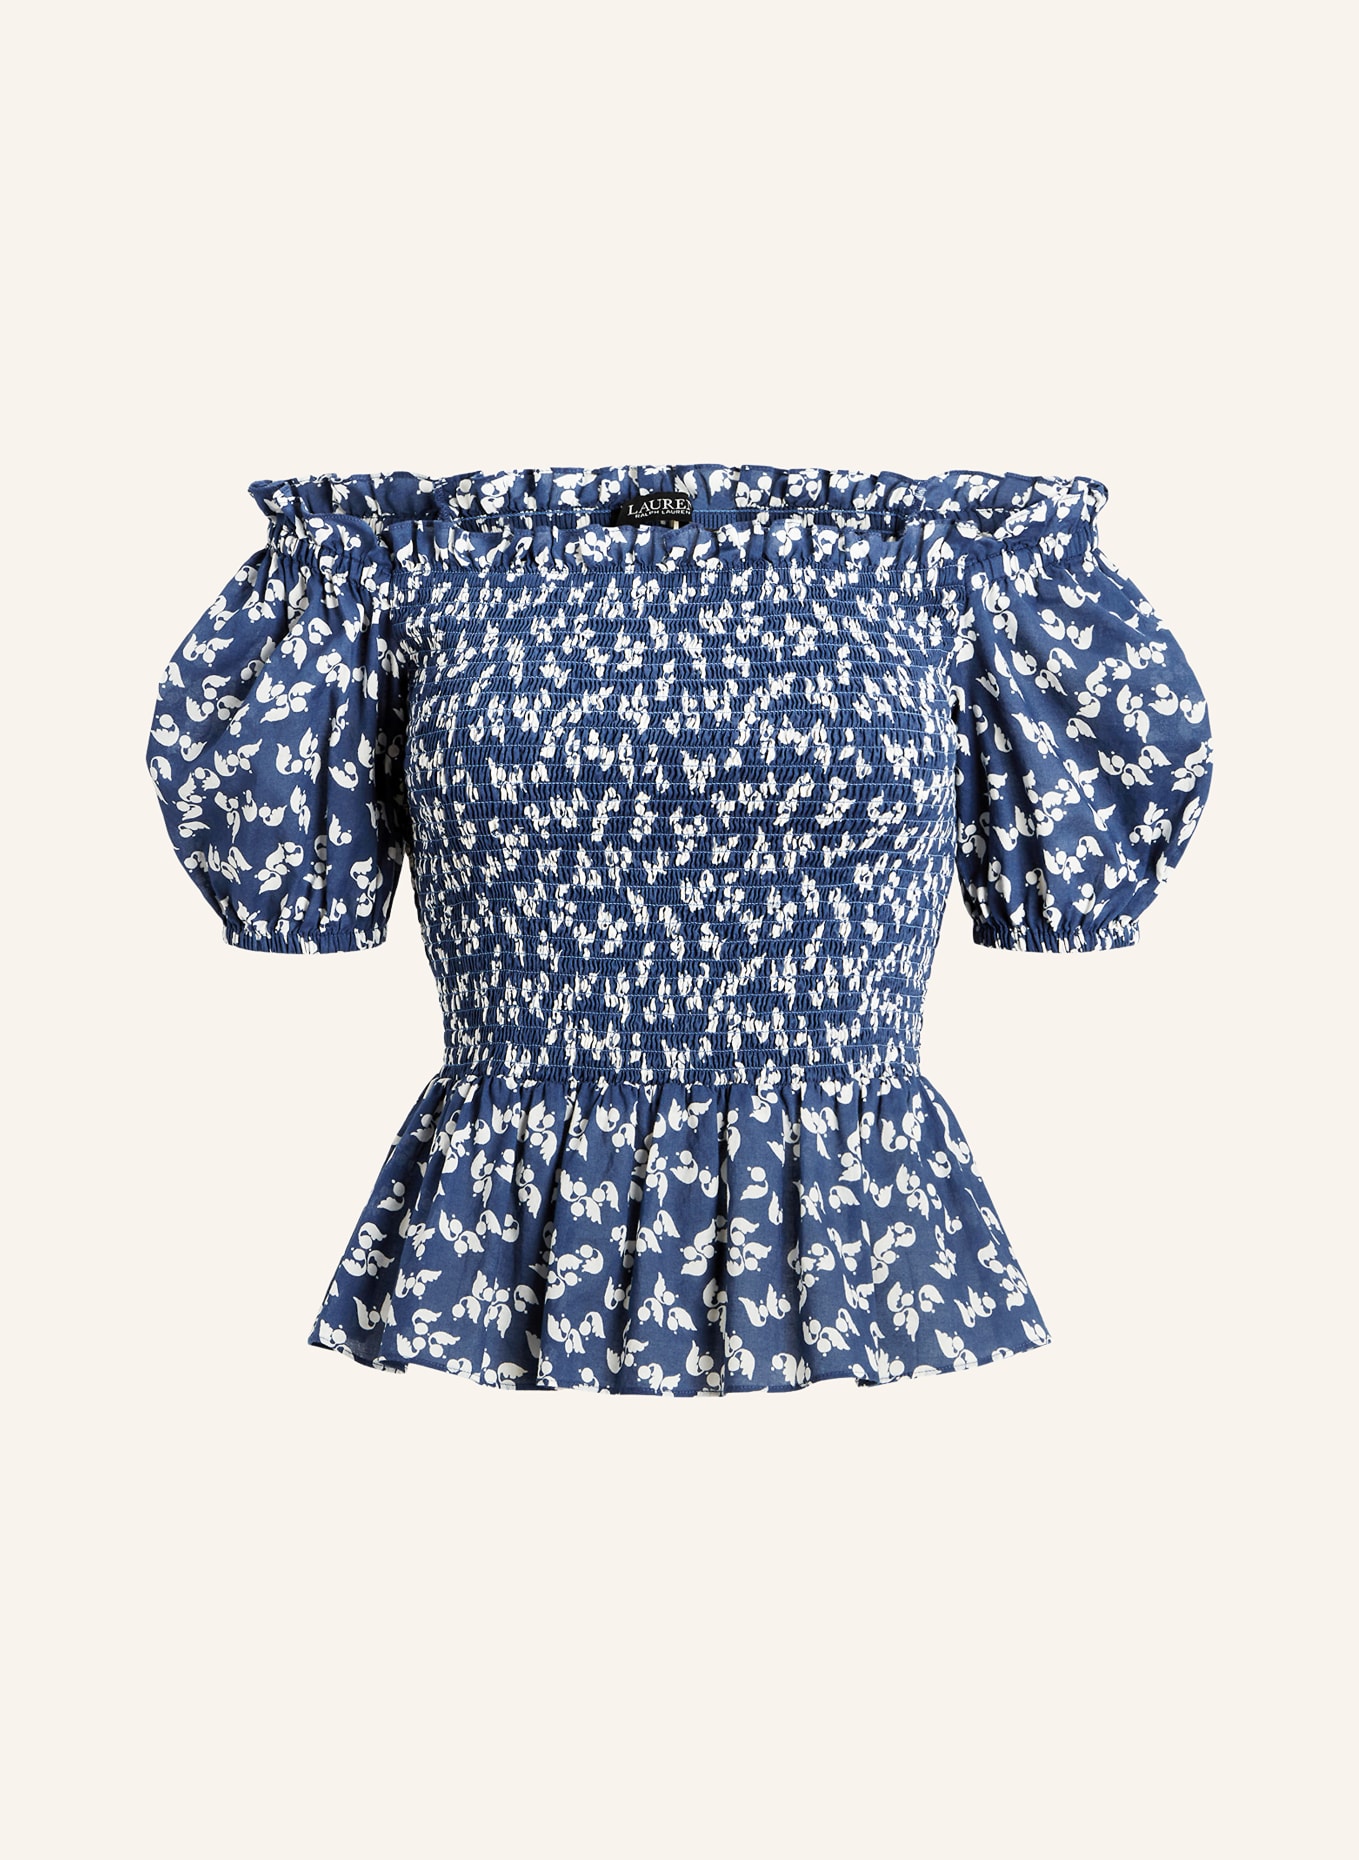 LAUREN RALPH LAUREN Off-the-shoulder blouse, Color: BLUE/ CREAM (Image 1)